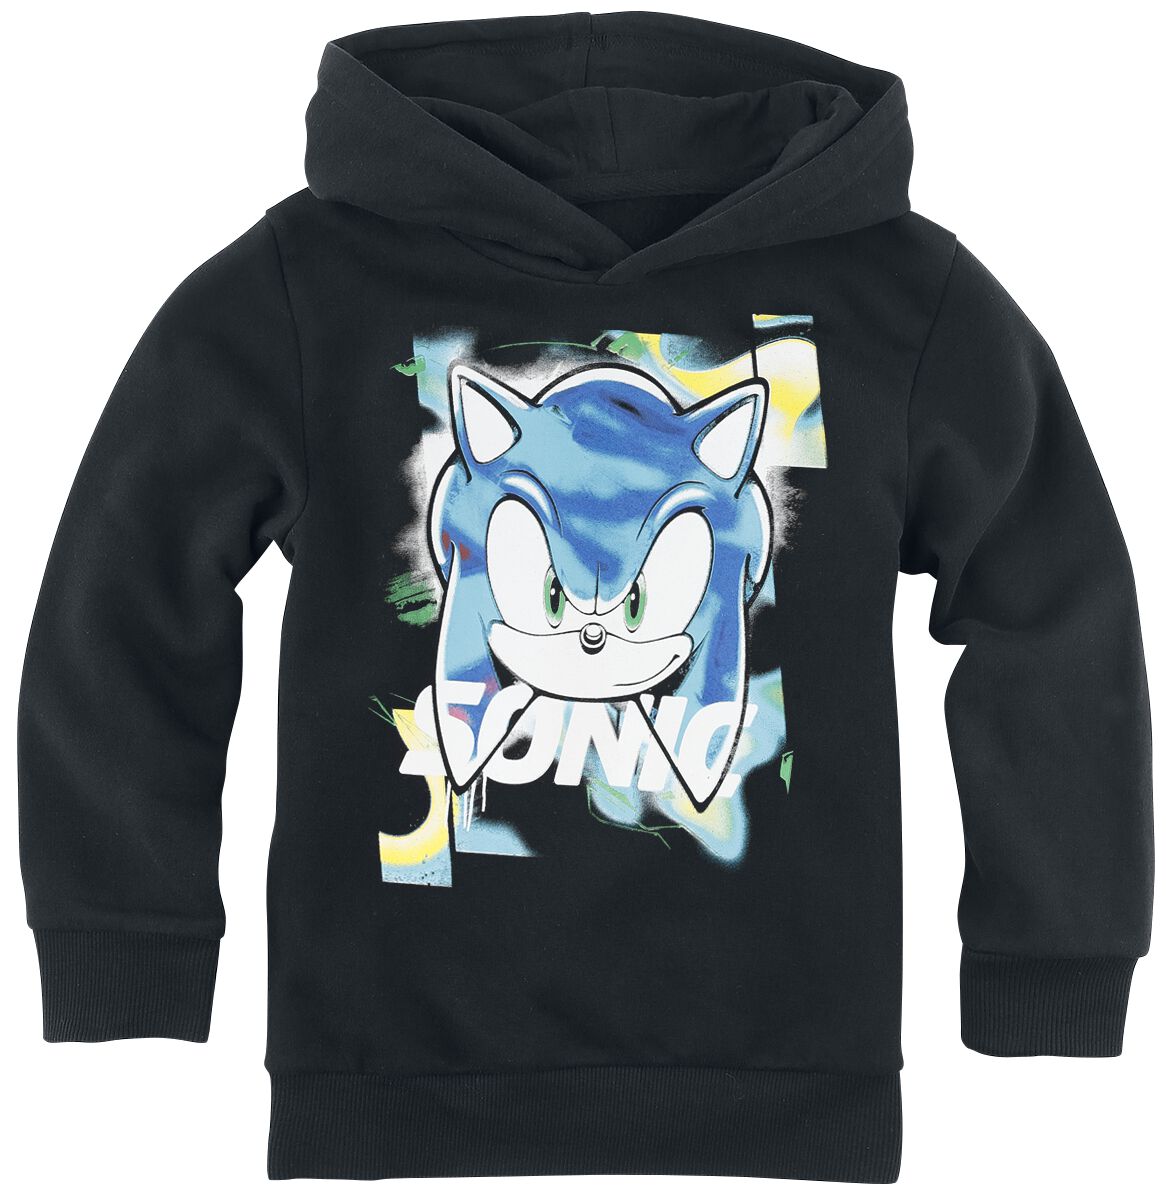 Sonic The Hedgehog - Gaming Kapuzenpullover für Kinder - Kids - Sonic Face - für Mädchen & Jungen - schwarz  - EMP exklusives Merchandise!